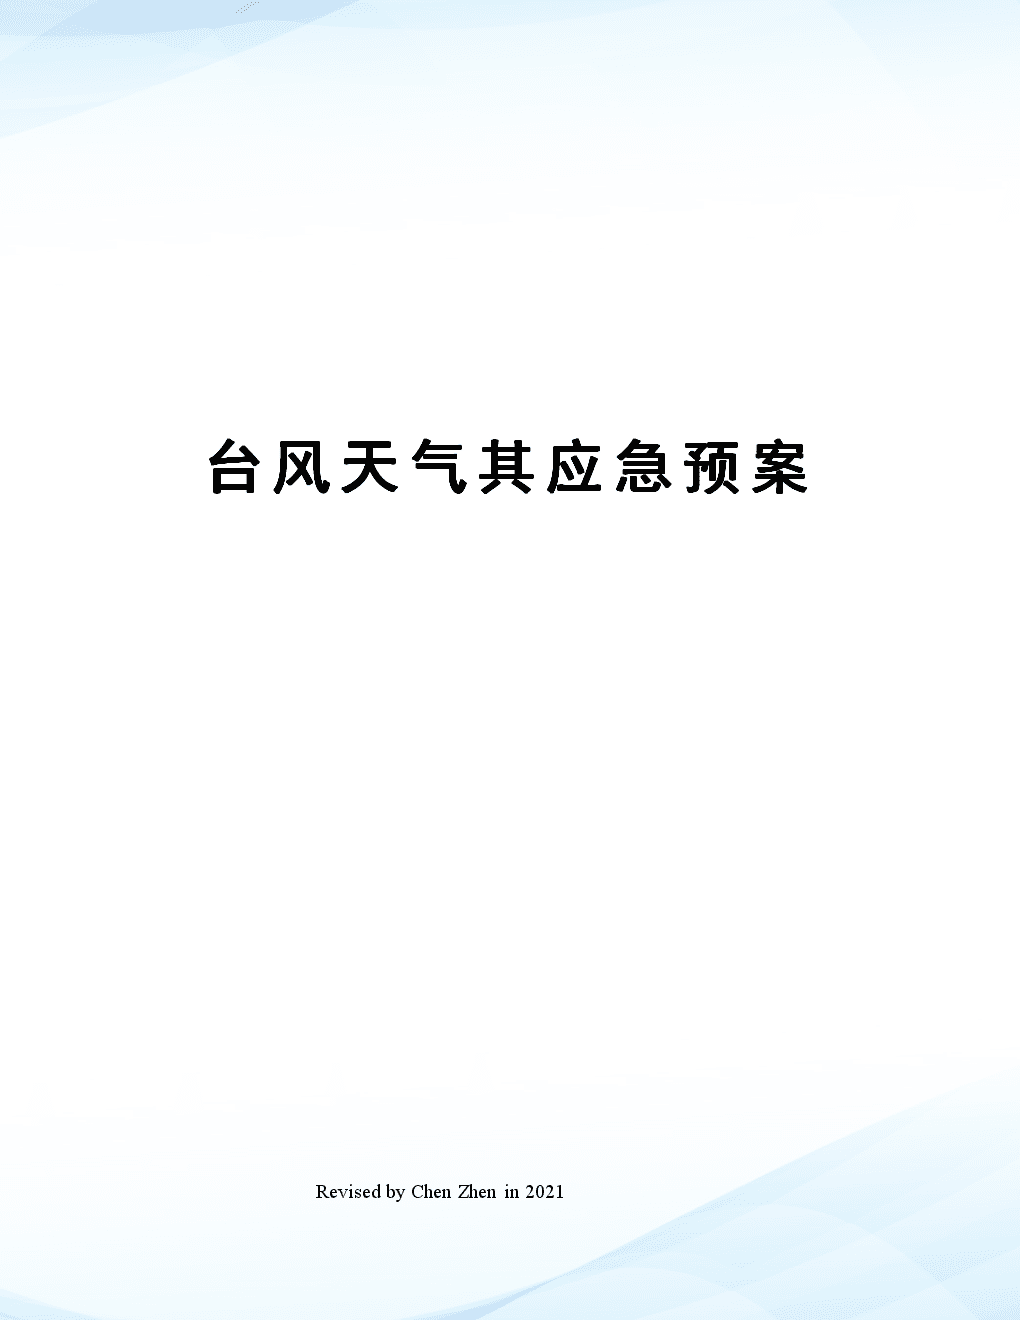 长沙县低温雨雪冰冻天气应急工作紧急会议召开